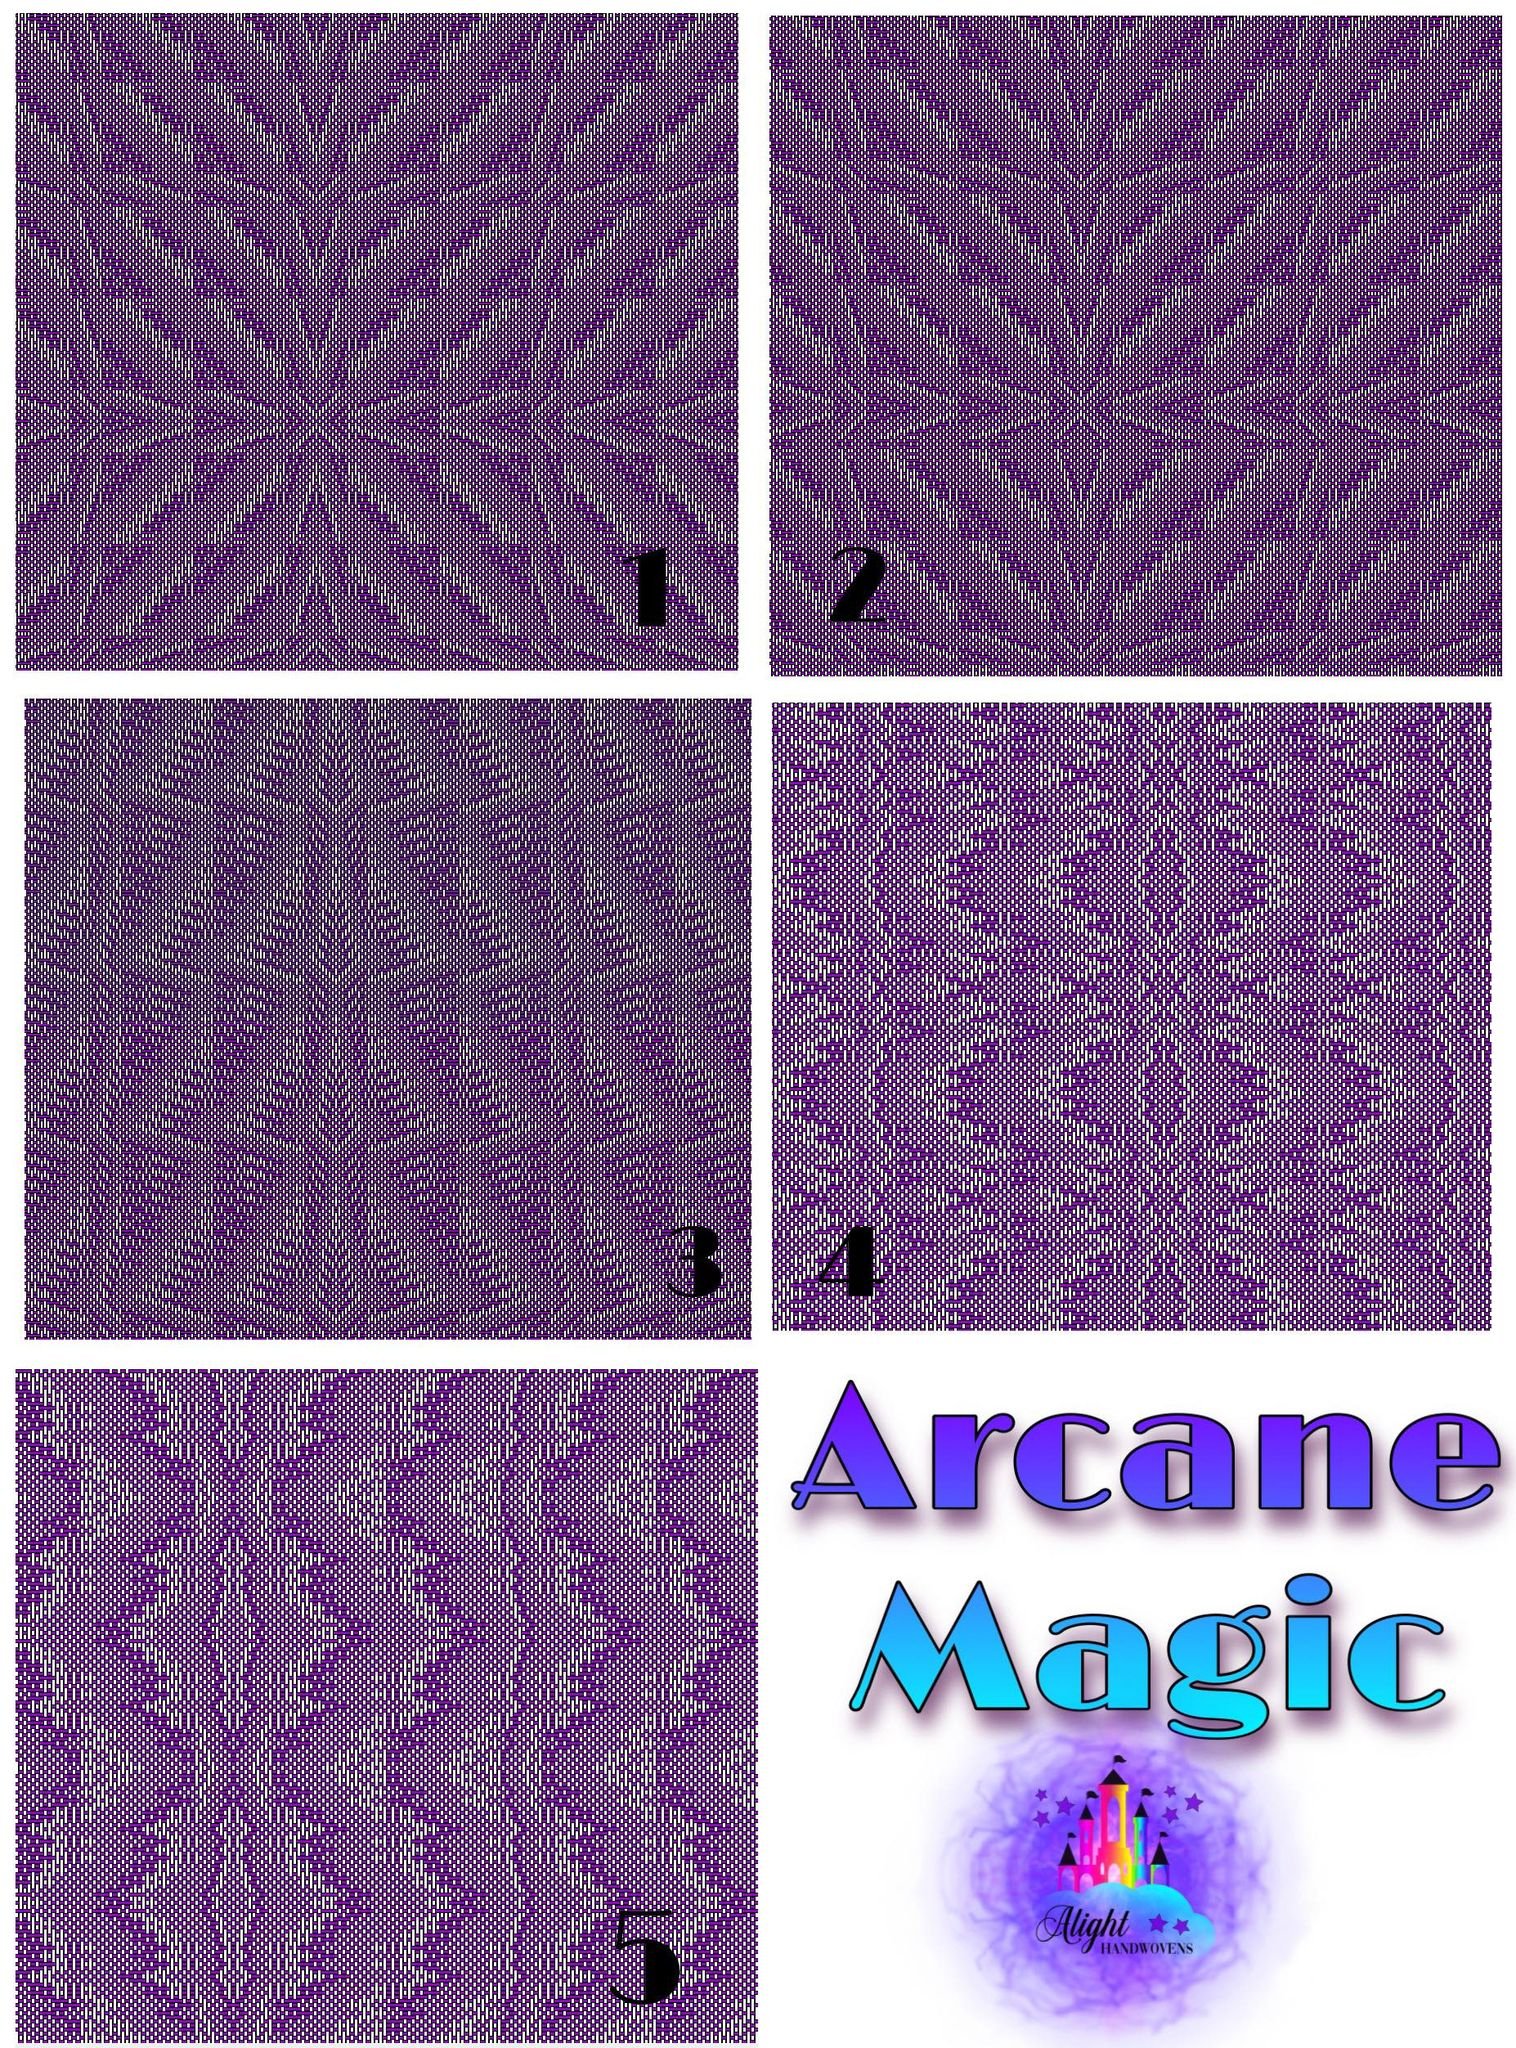 Arcane Magic.jpg